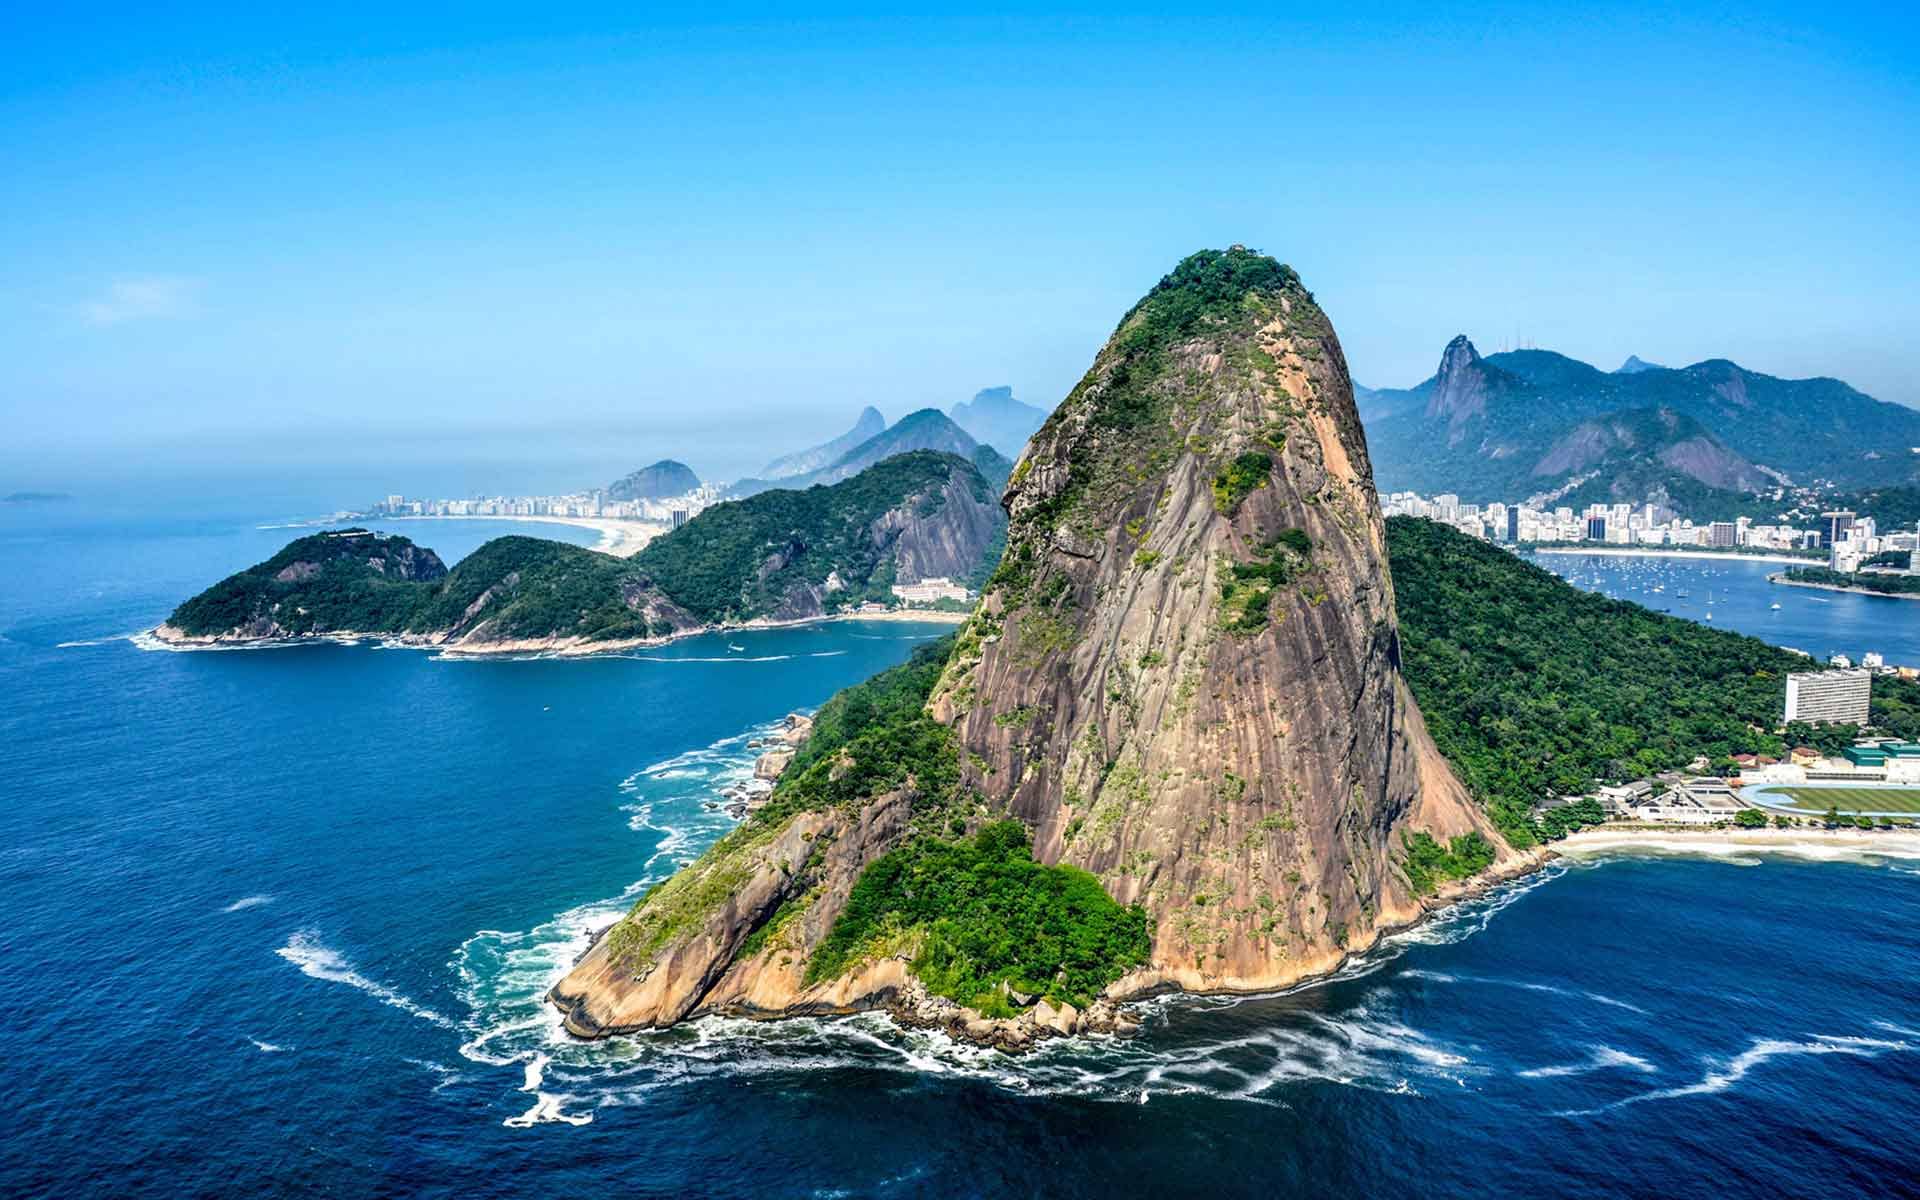 Sugarloaf Mountain, Rio de Janeiro